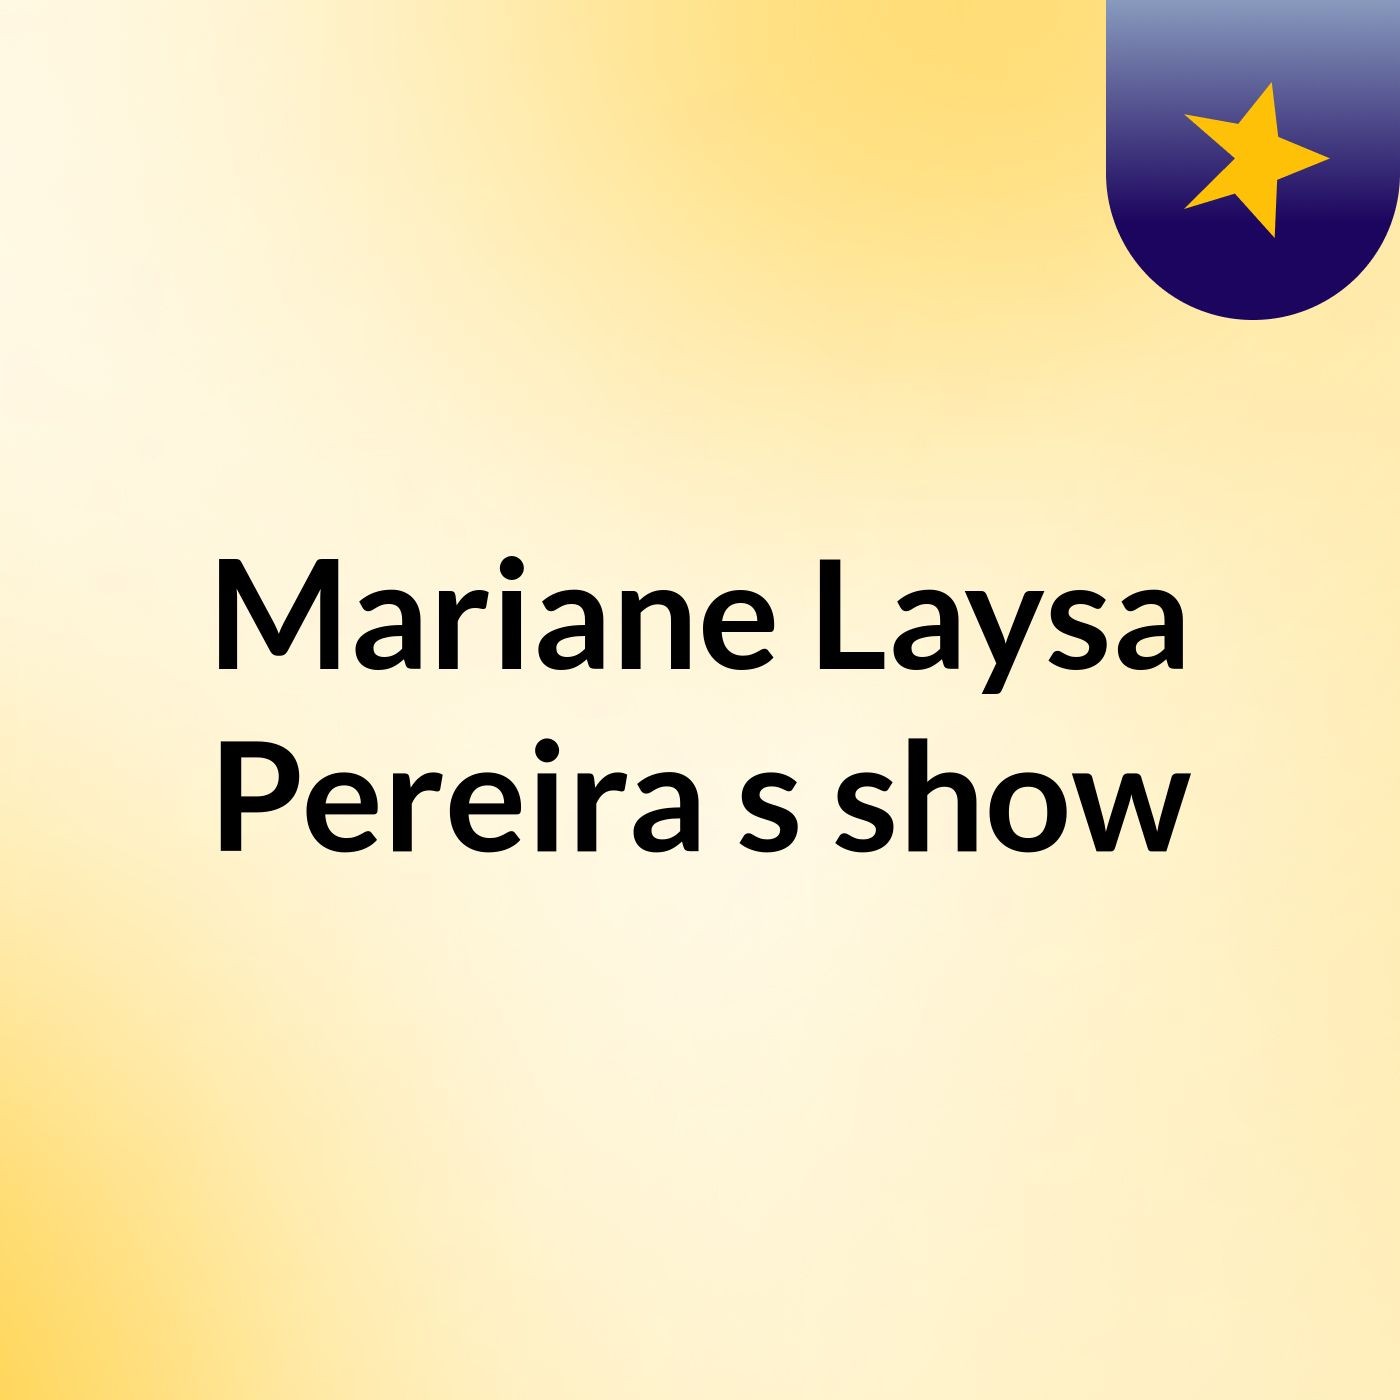 Mariane Laysa Pereira's show